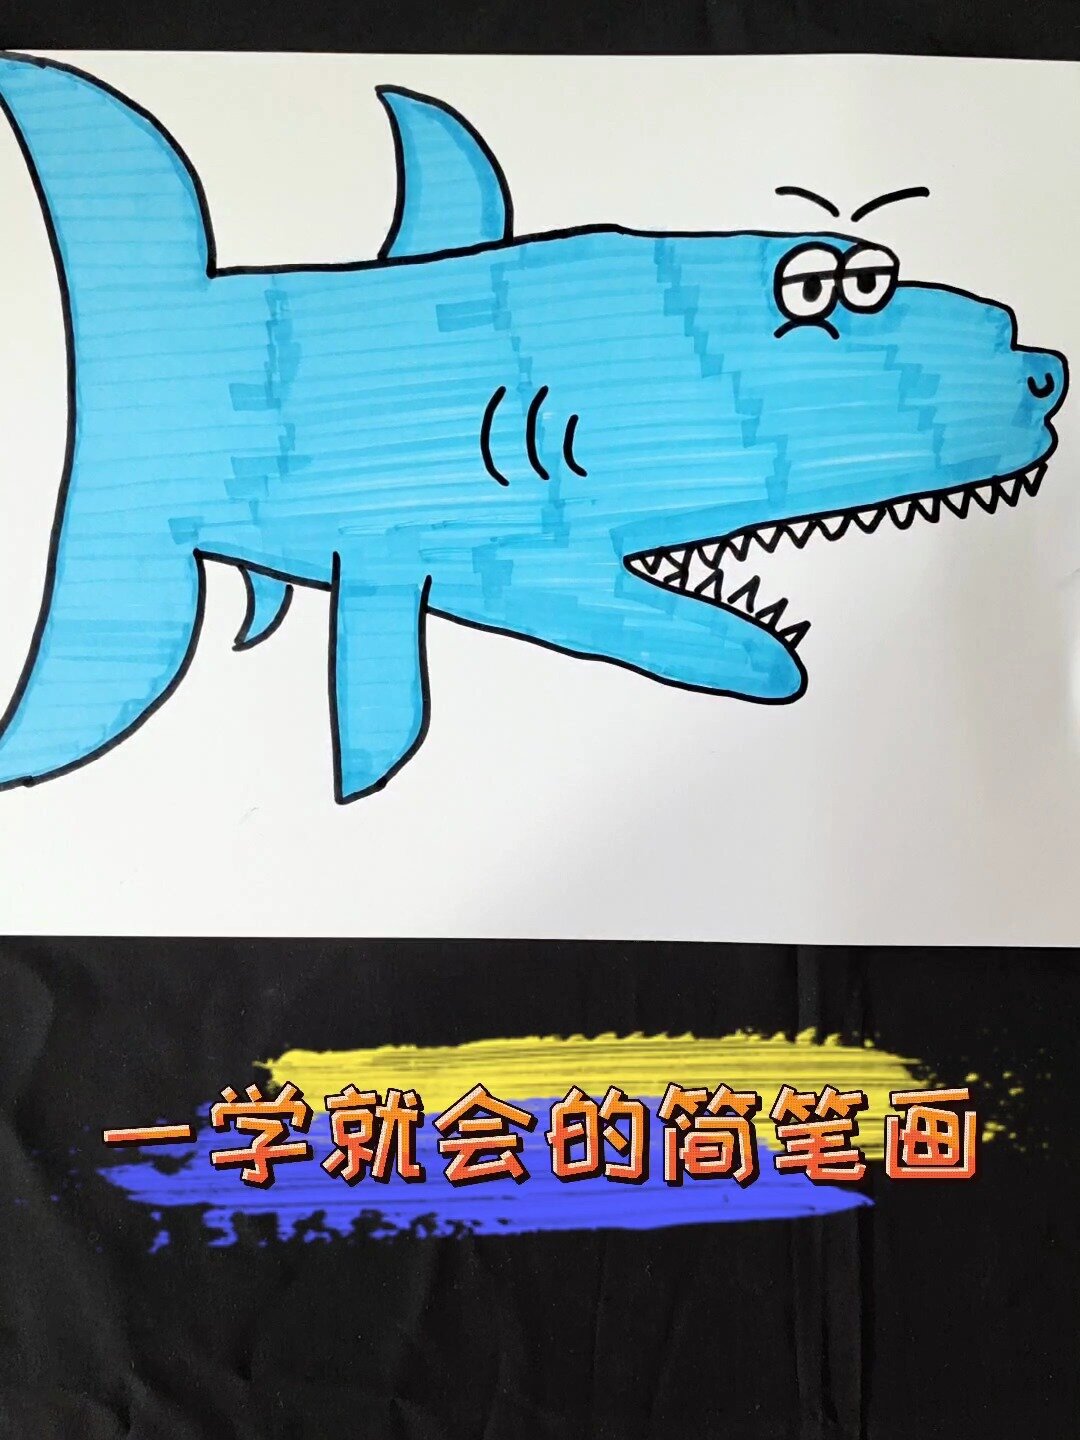 零基础小朋友一学就会的简笔画《大鲨鱼》